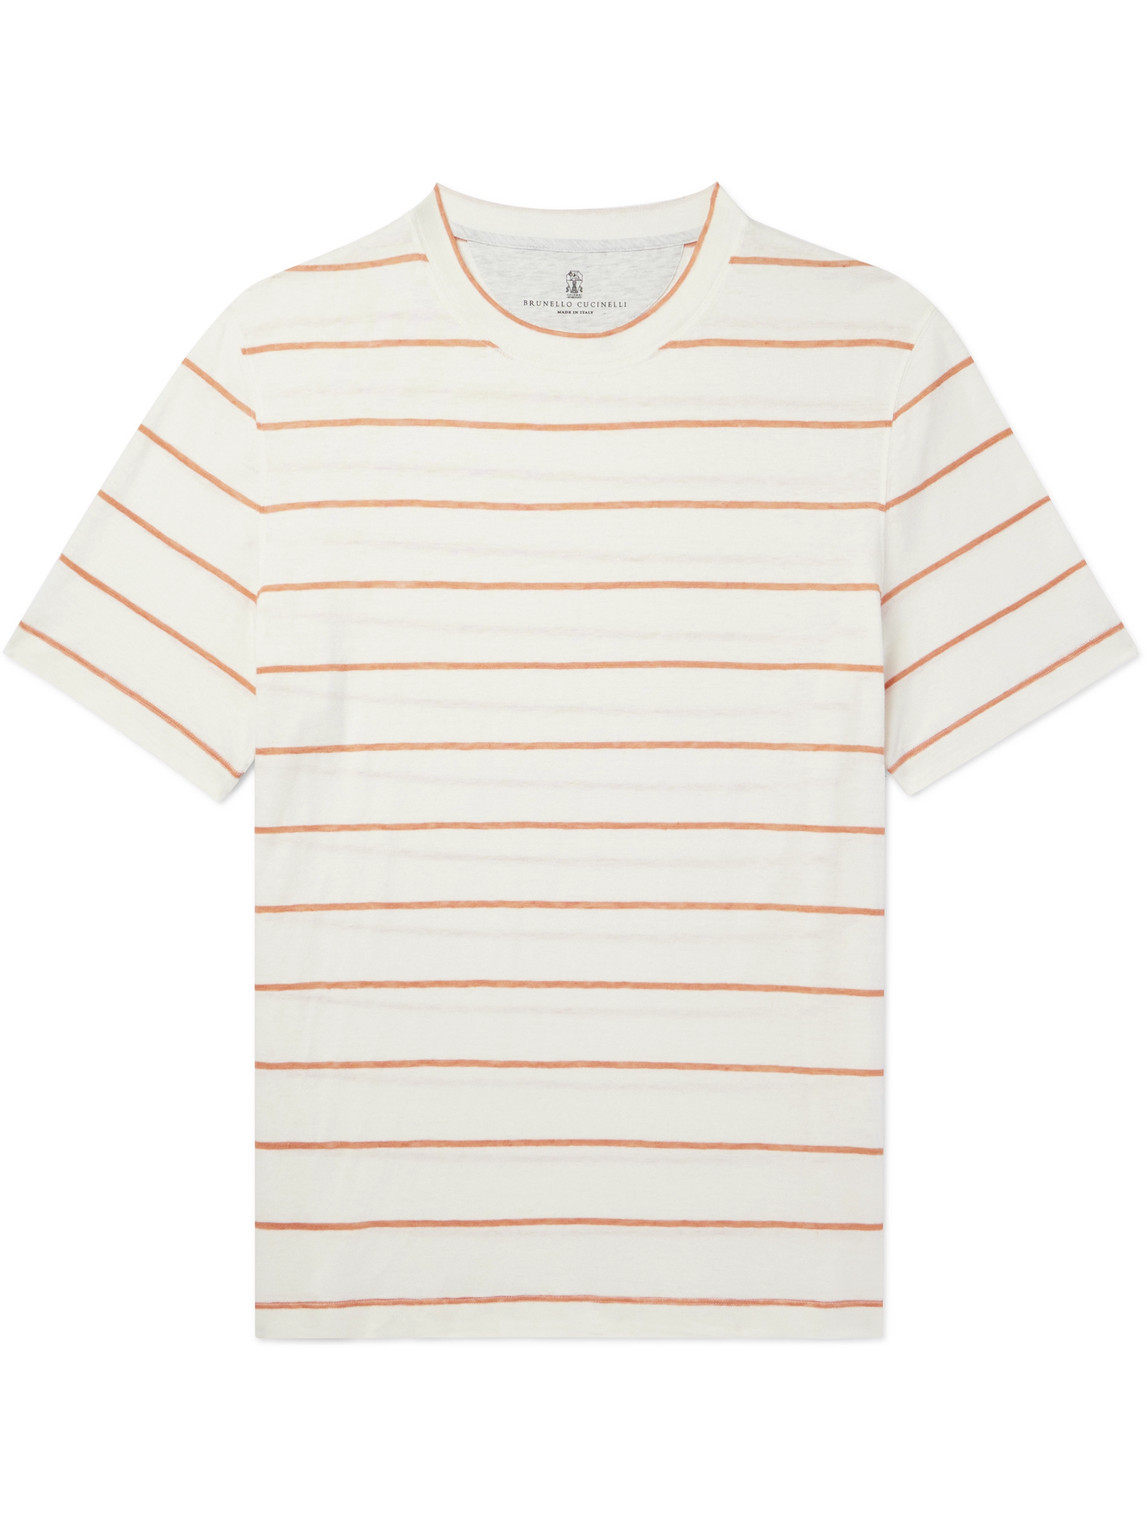 Brunello Cucinelli - Striped Linen and Cotton-Blend T-Shirt - Men - Neutrals - XL von Brunello Cucinelli